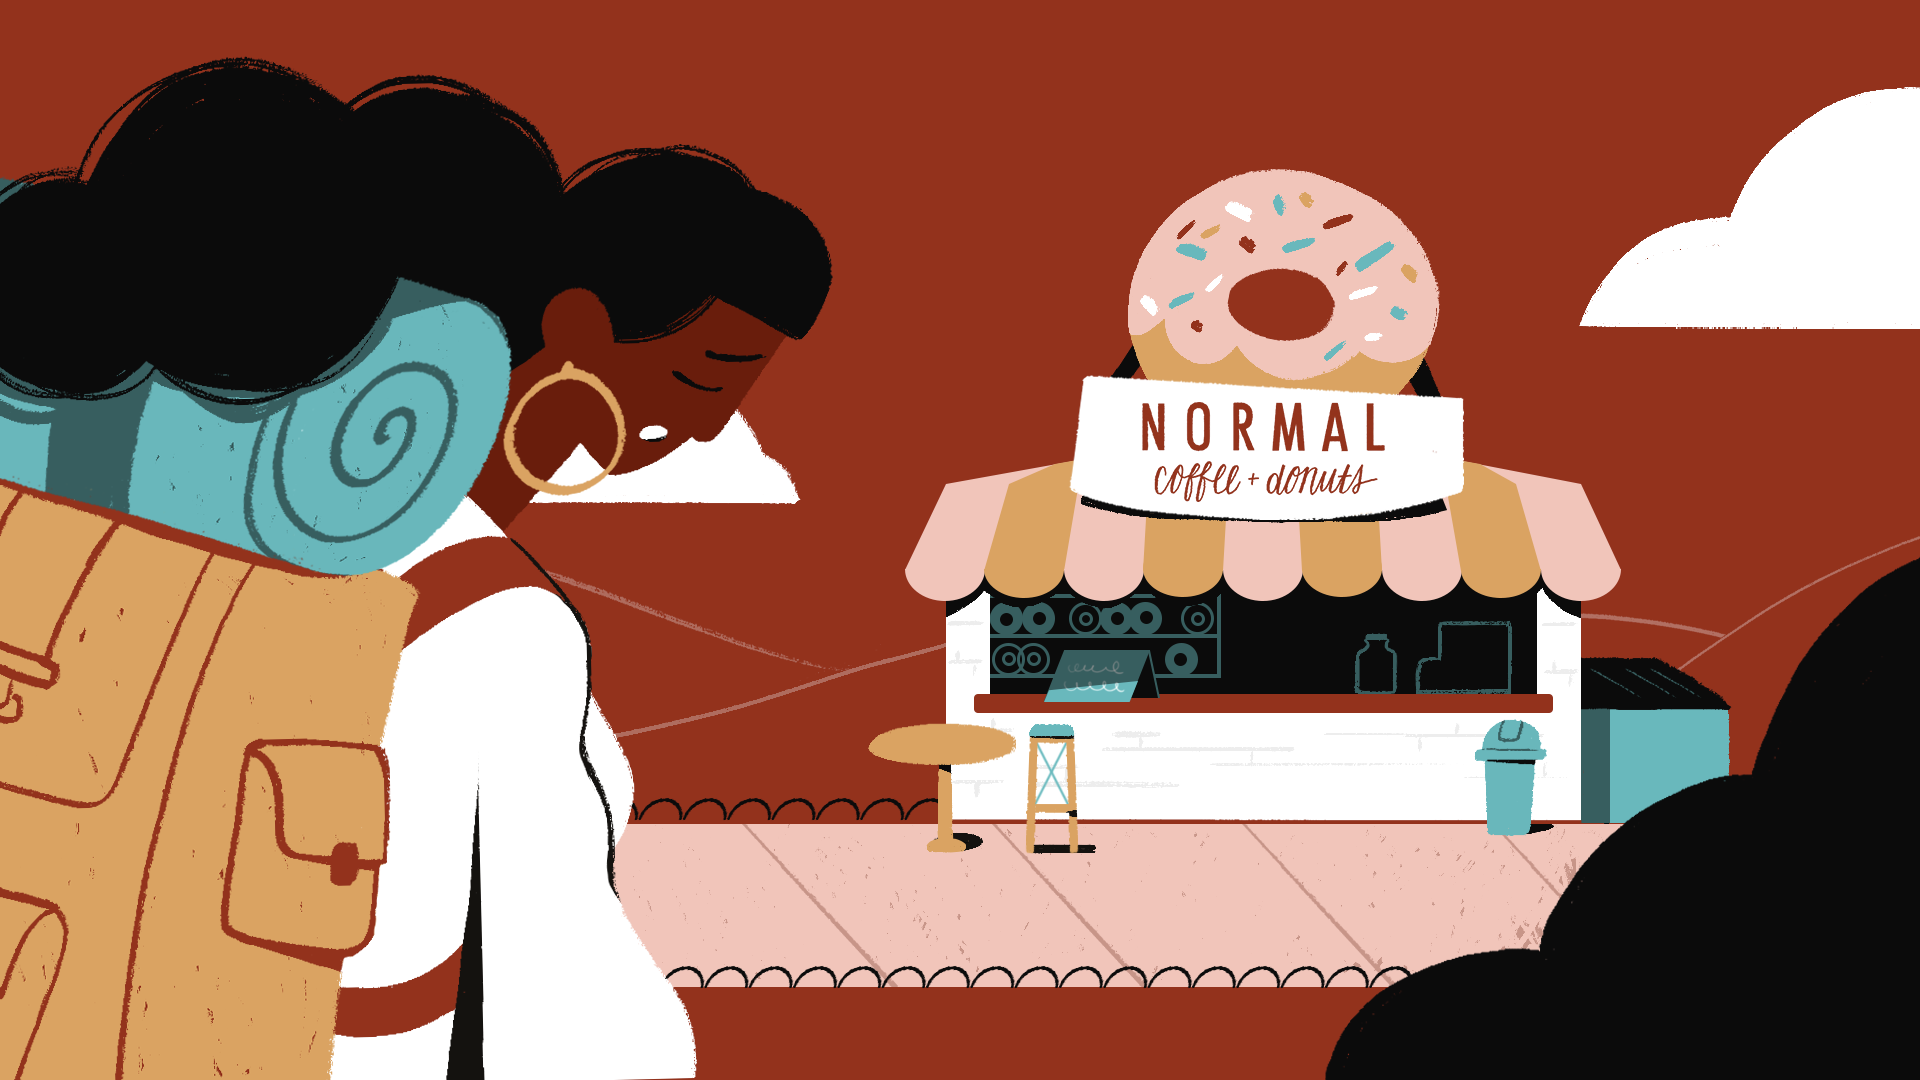 Une jeune femme à la peau foncée avec un sac à dos semble fatiguée et se dirige vers un comptoir normal café + donuts